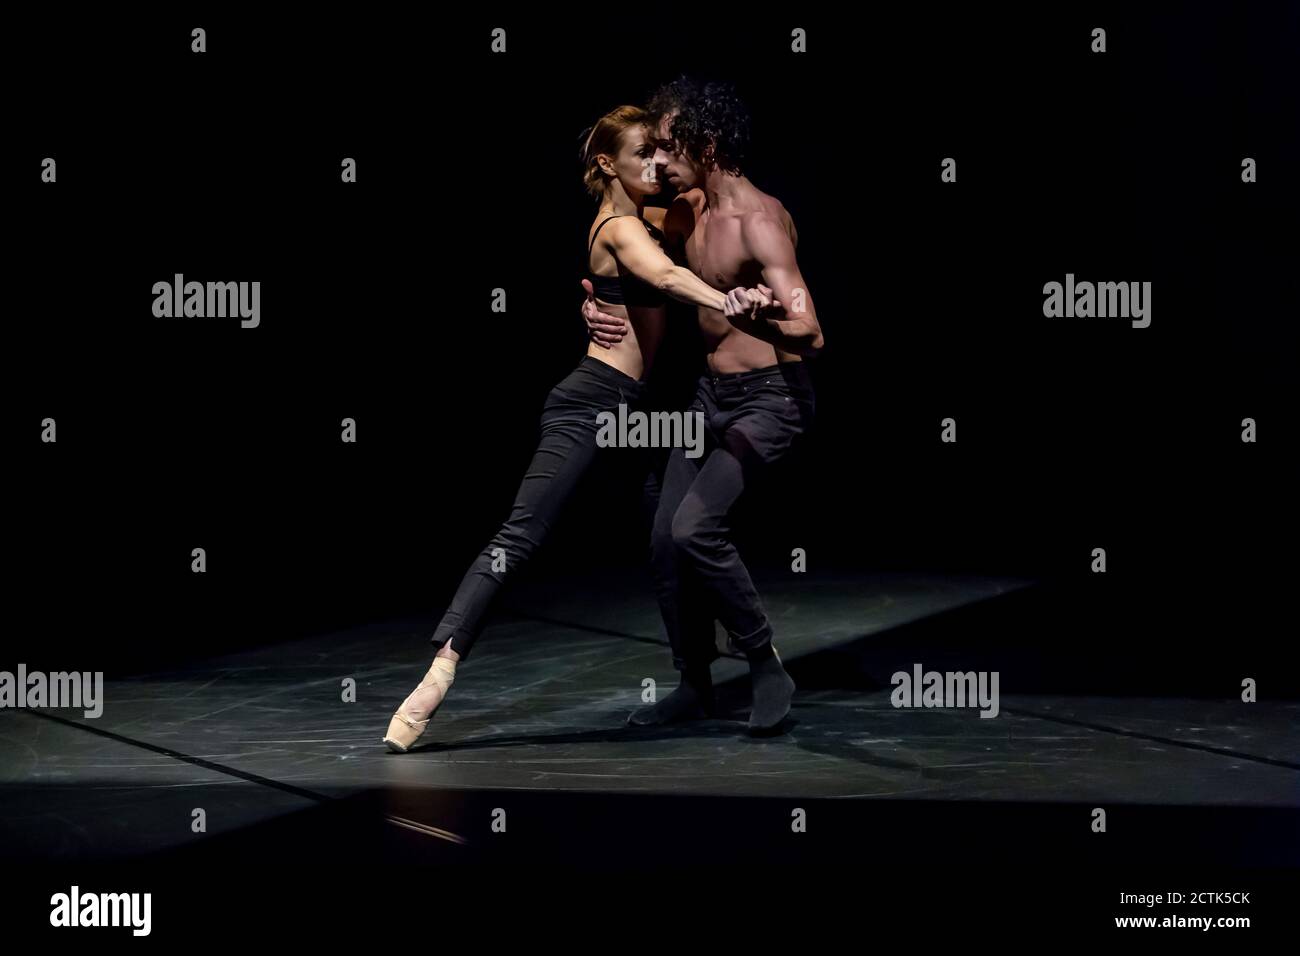 Danseuse féminine et masculine effectuant un ballet contemporain sur scène noire Banque D'Images